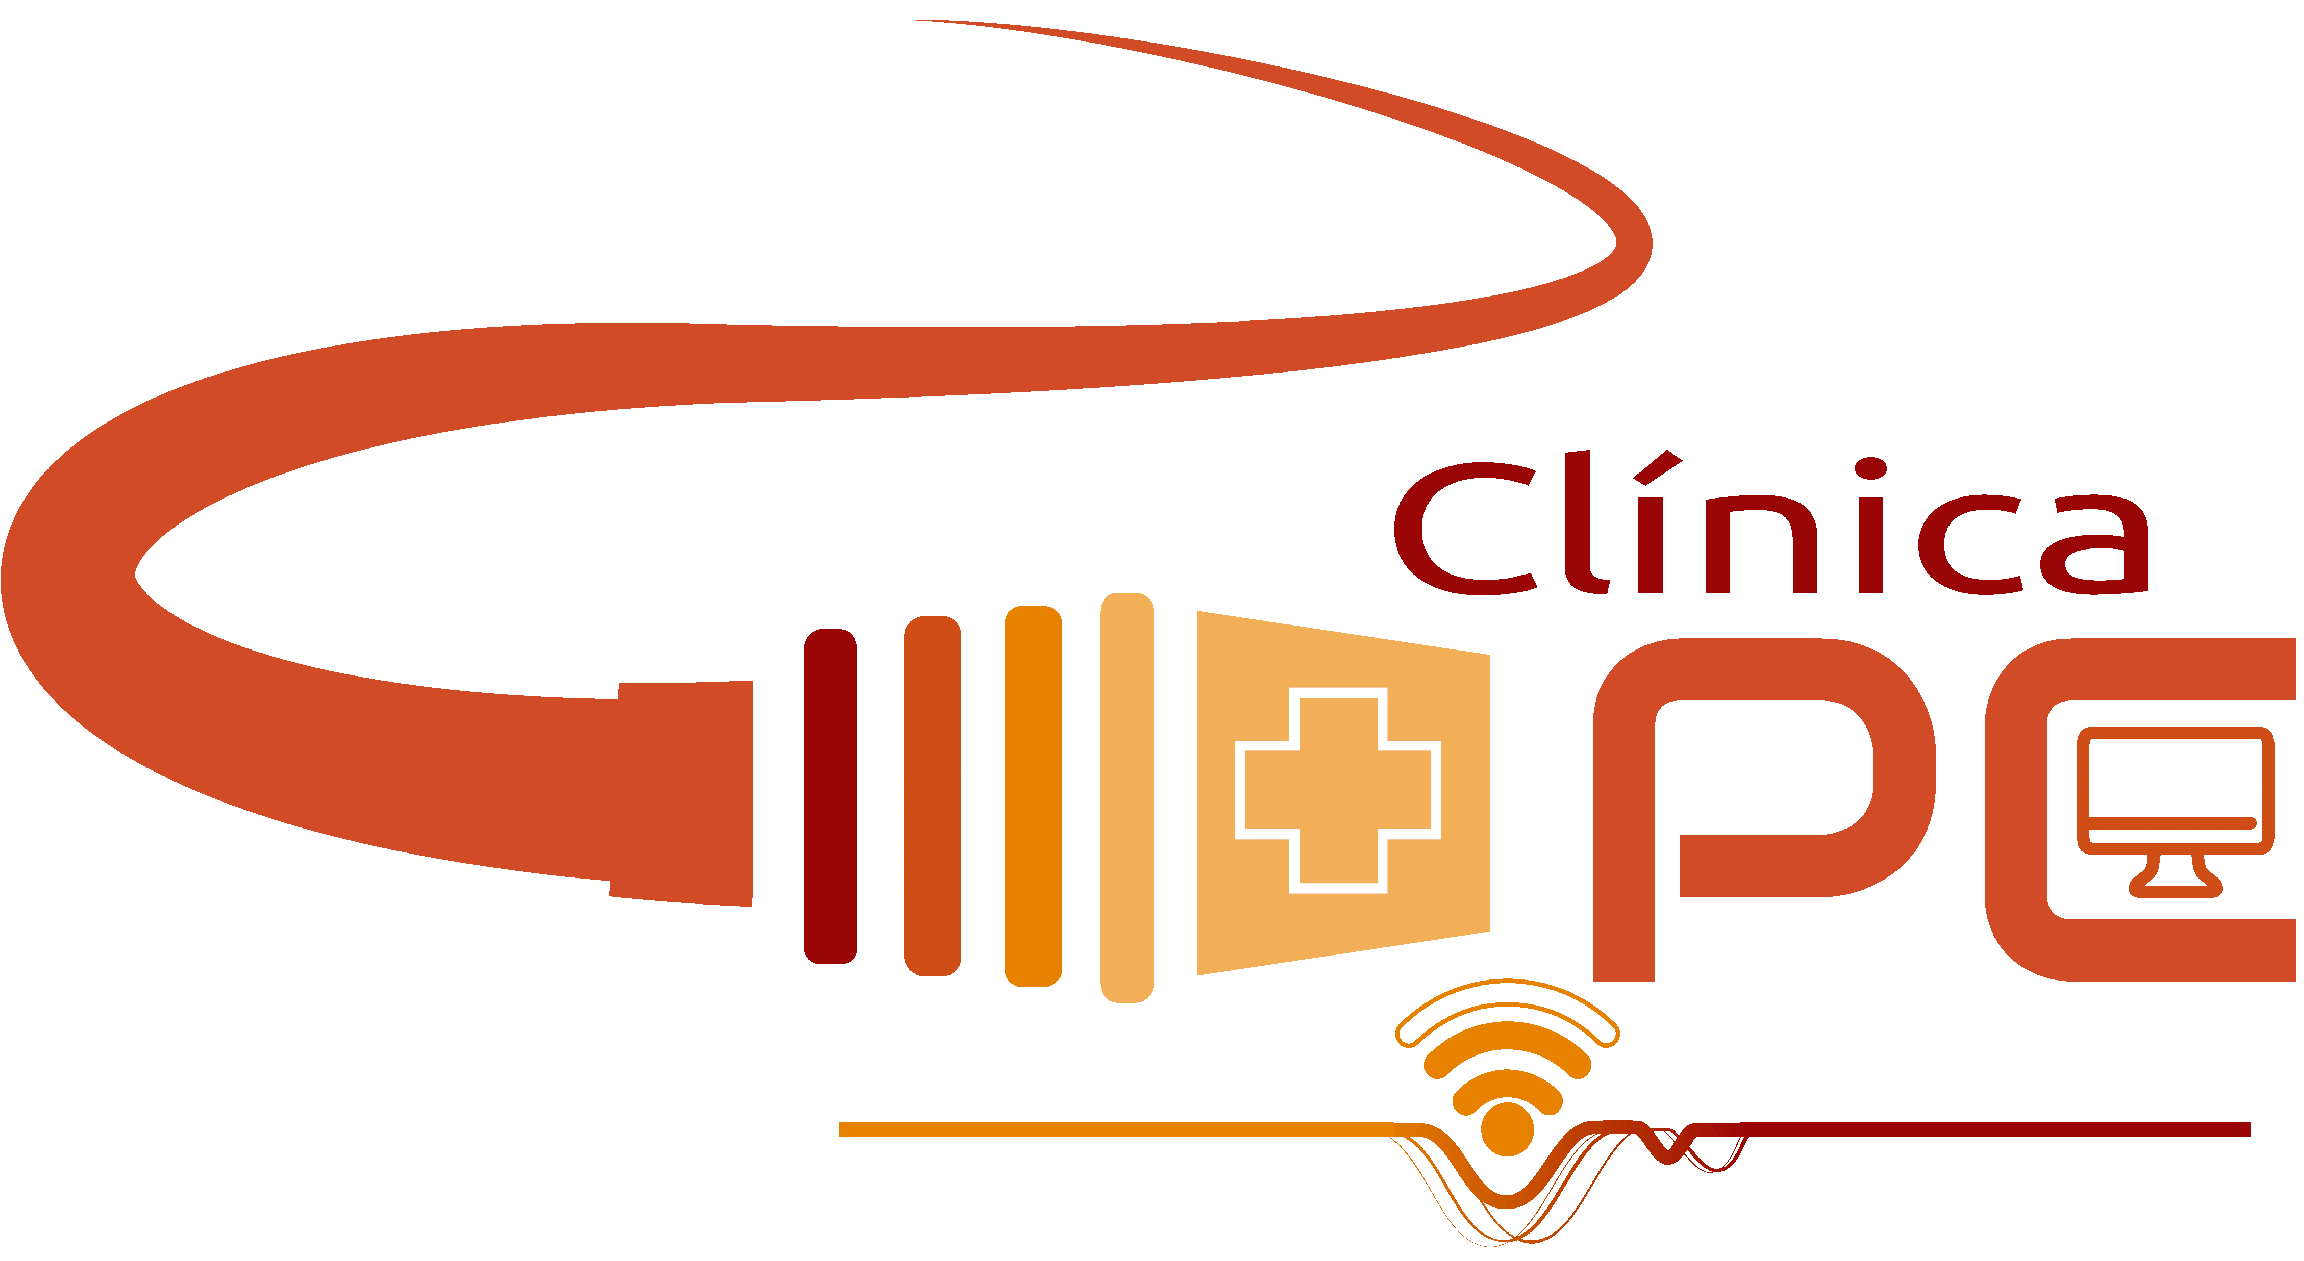 ClinicaPC